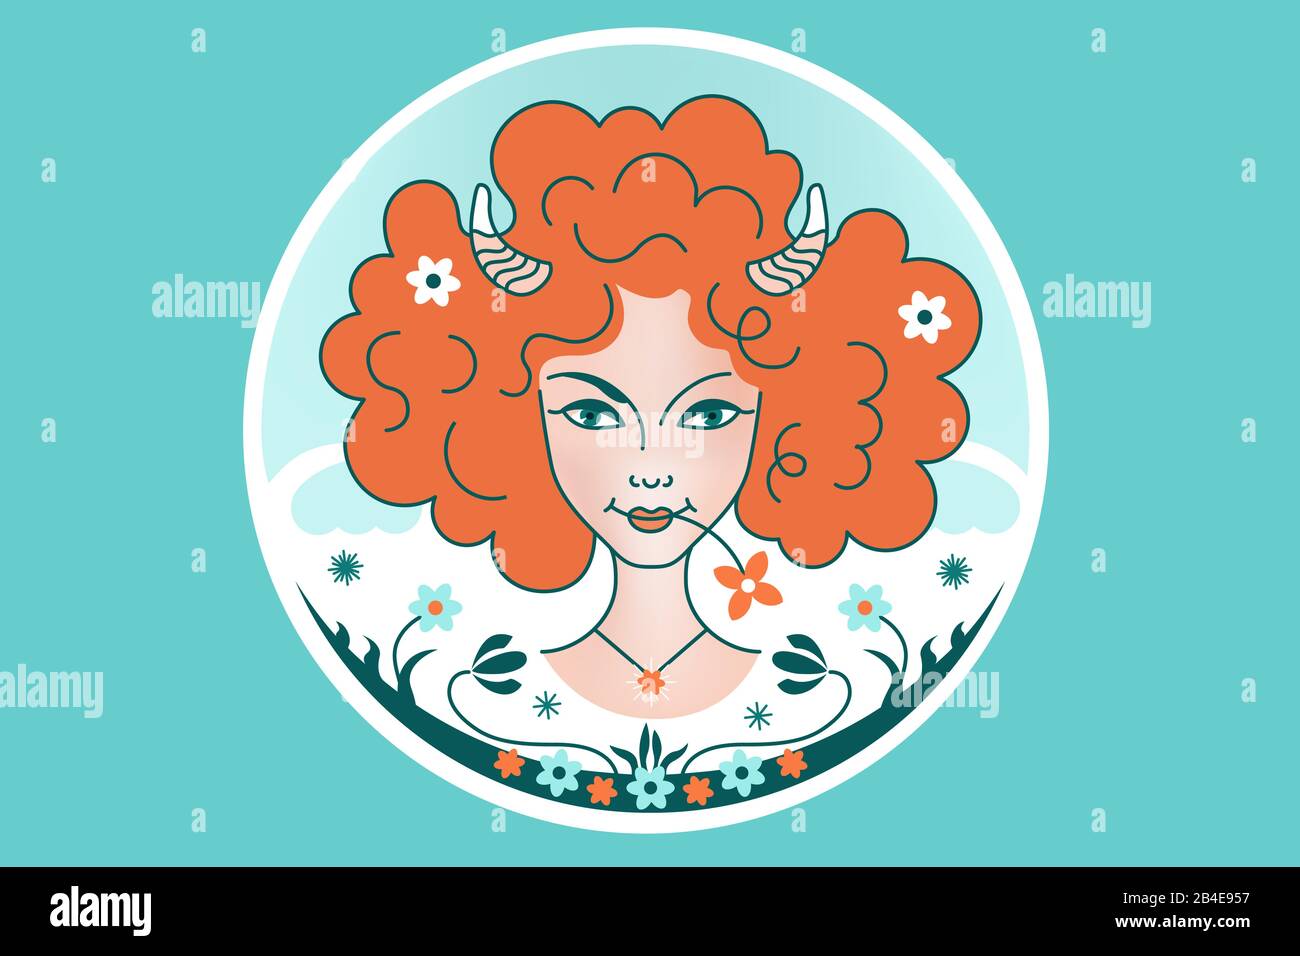 Aries segno zodiacale costellazione, ragazza o donna con capelli rossi soffici, corna, fiori, sfondo blu. Fantasia illustrazione, ornamento in una fiaba s Illustrazione Vettoriale